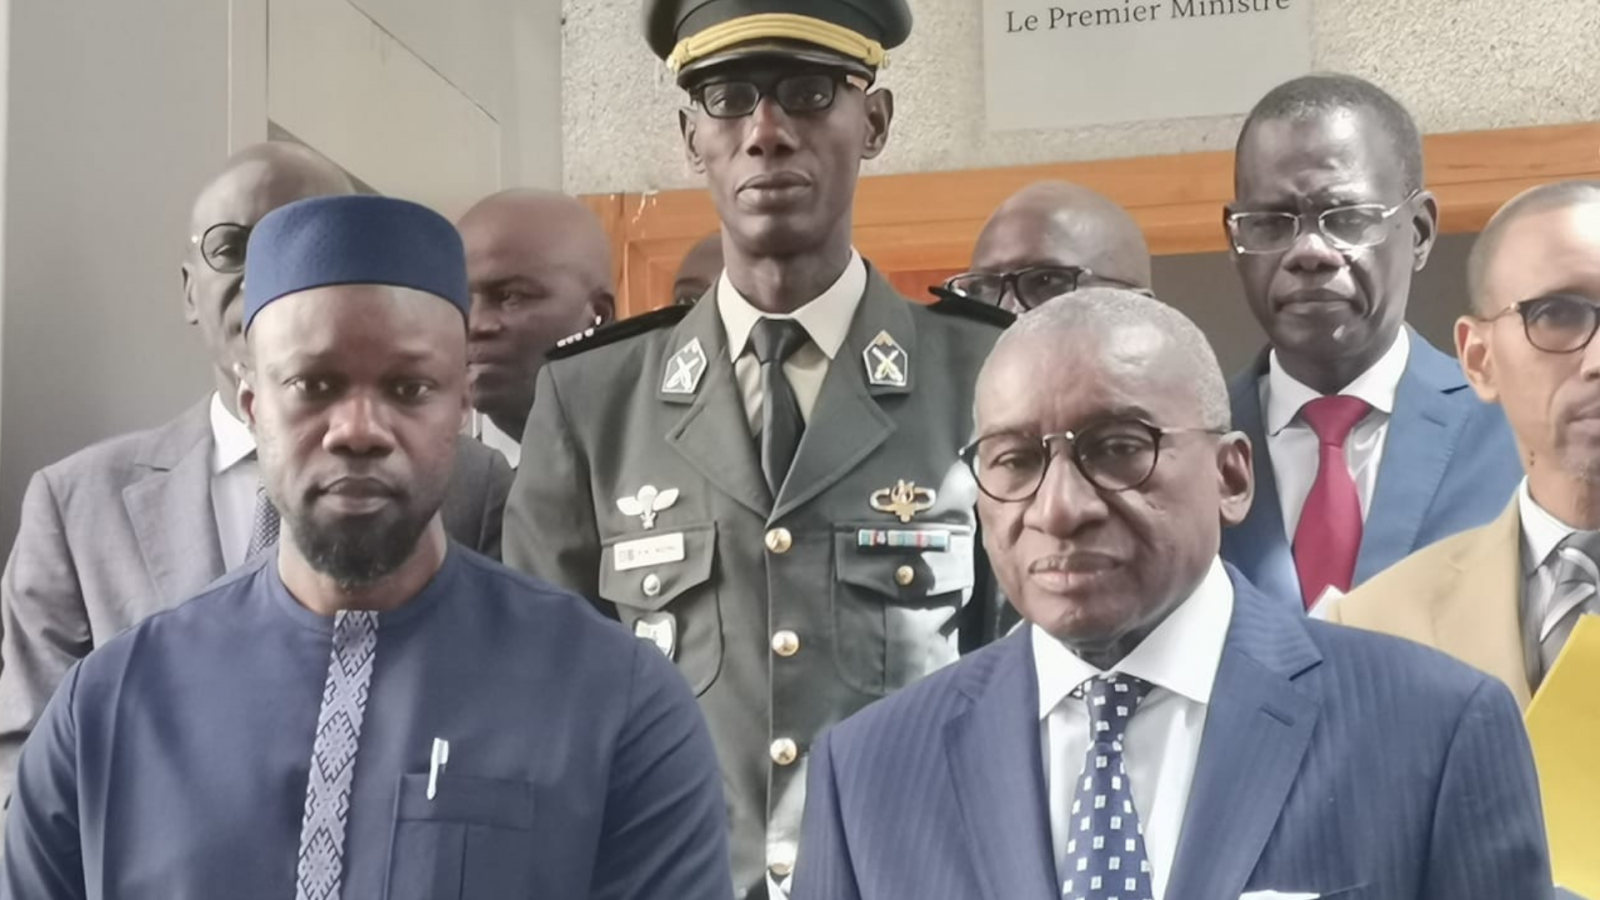 Sénégal: sobre passation de pouvoir entre Sidiki Kaba et le Premier ministre Ousmane Sonko